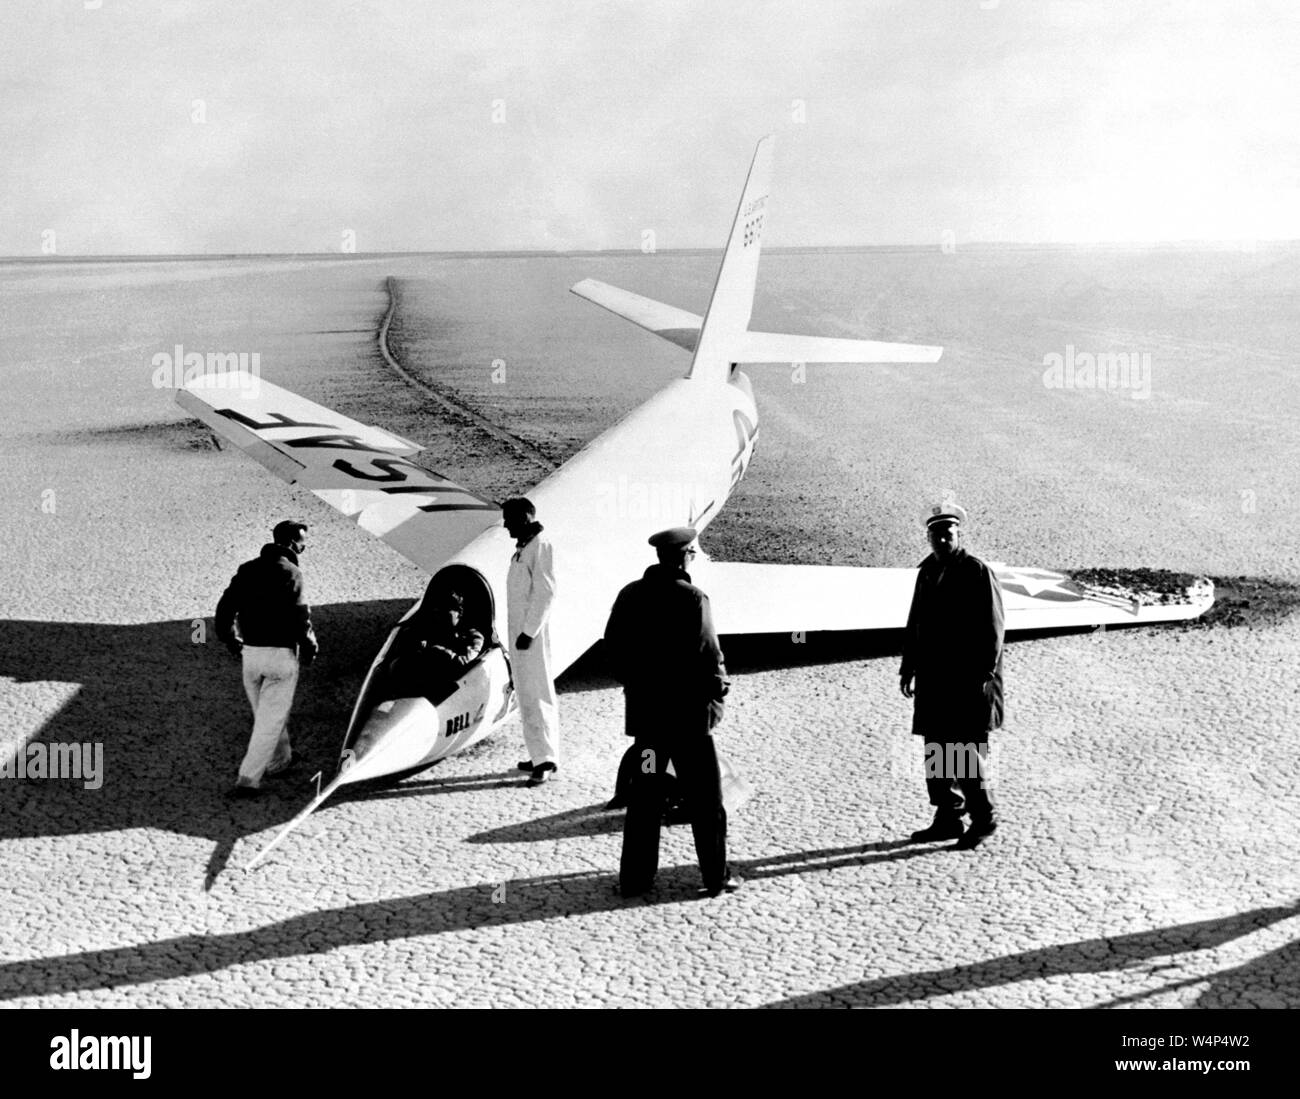 La NASA gli ingegneri e i piloti si raccolgono intorno al X-2 aeromobili con un naso collassato di atterraggio dopo lo sbarco sul primo volo di planata a Edwards Air Force Base, Kern County, California, 1952. Immagine cortesia Nazionale Aeronautica e Spaziale Administration (NASA). () Foto Stock